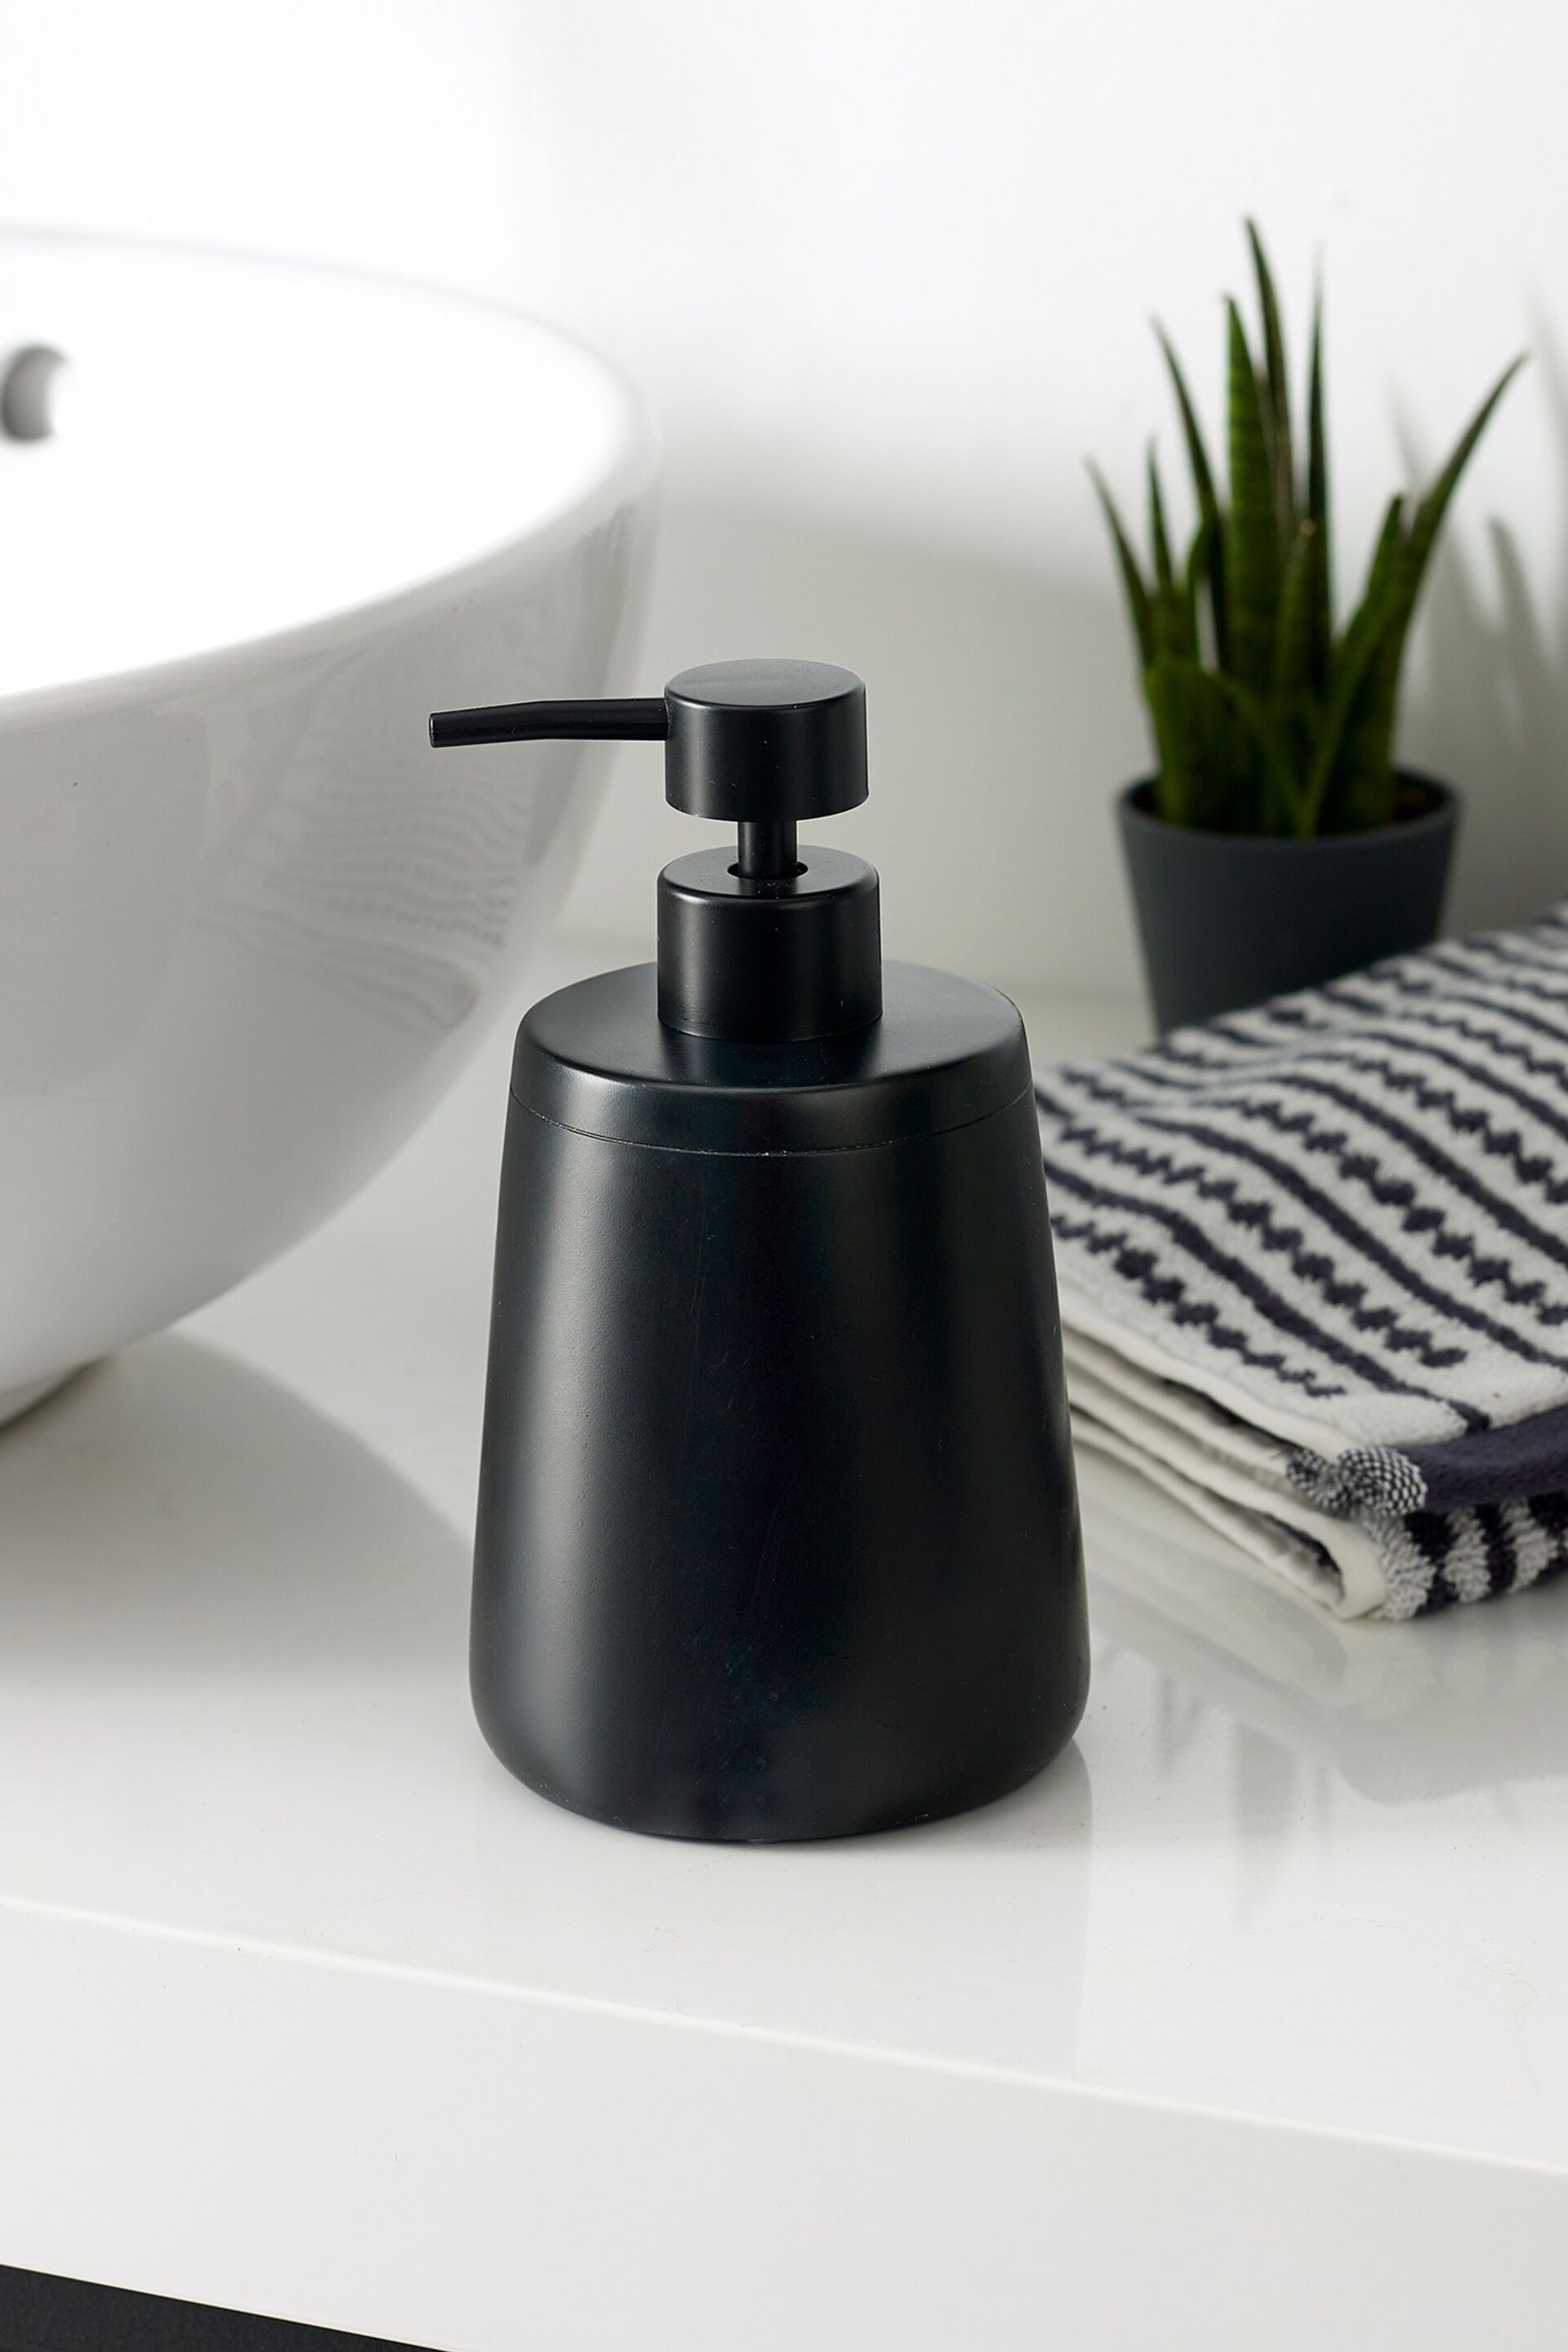 Black Moderna Soap Dispenser - Image 1 of 3